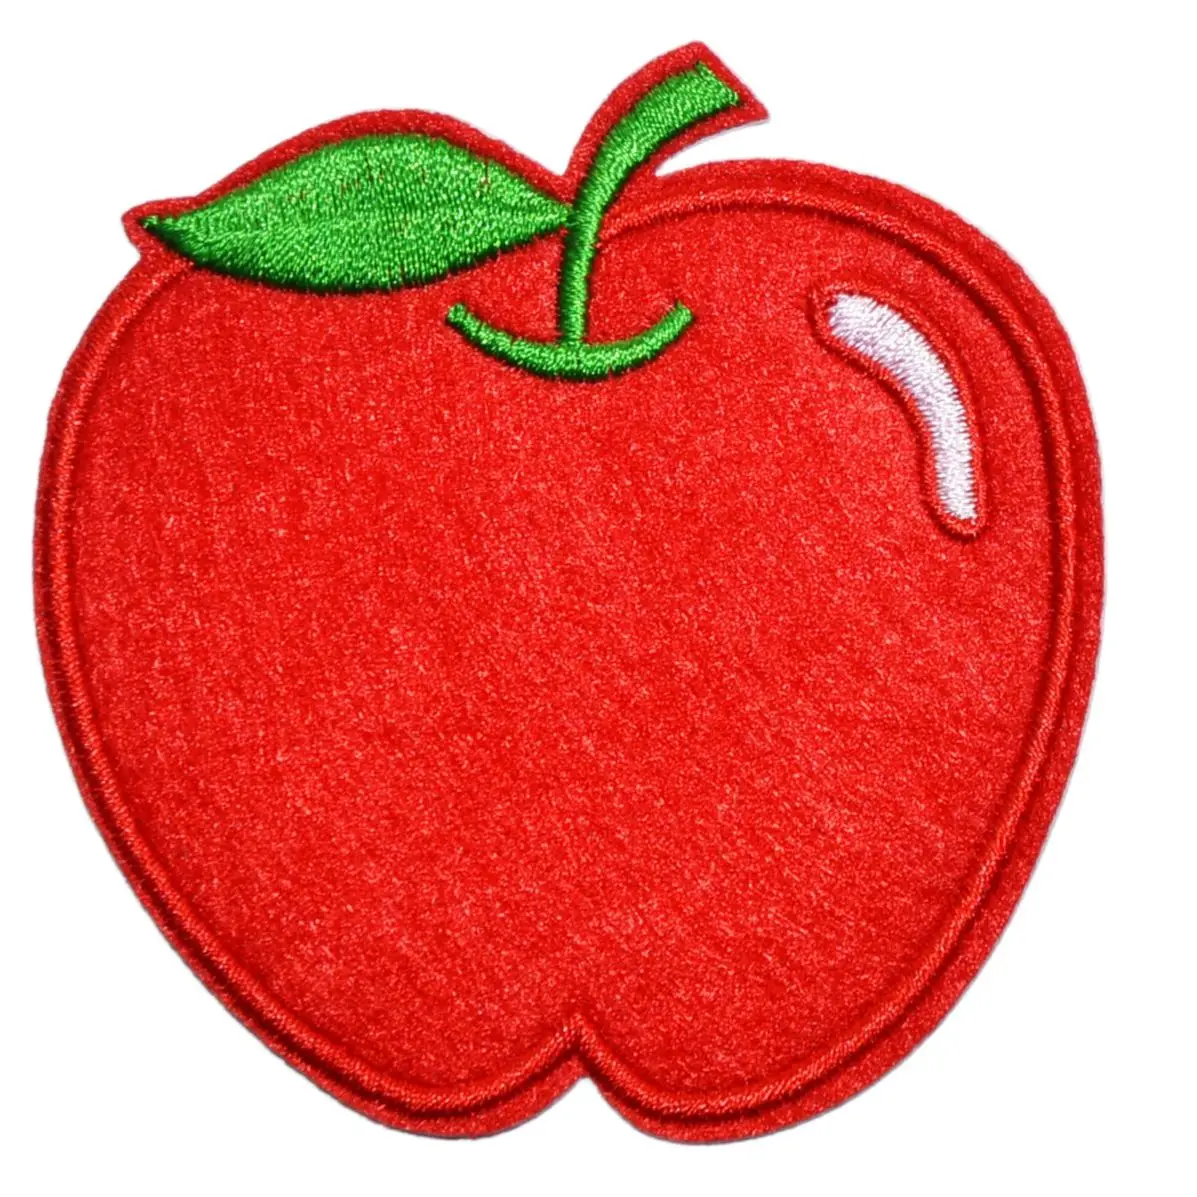 Oferta! ~ Manzana Roja sabrosa fruta profesor hoja verde, parche para  planchar, motivo de dibujos animados, aplique bordado (el tamaño es de  aproximadamente 8*8,2 cm)|Parches| - AliExpress